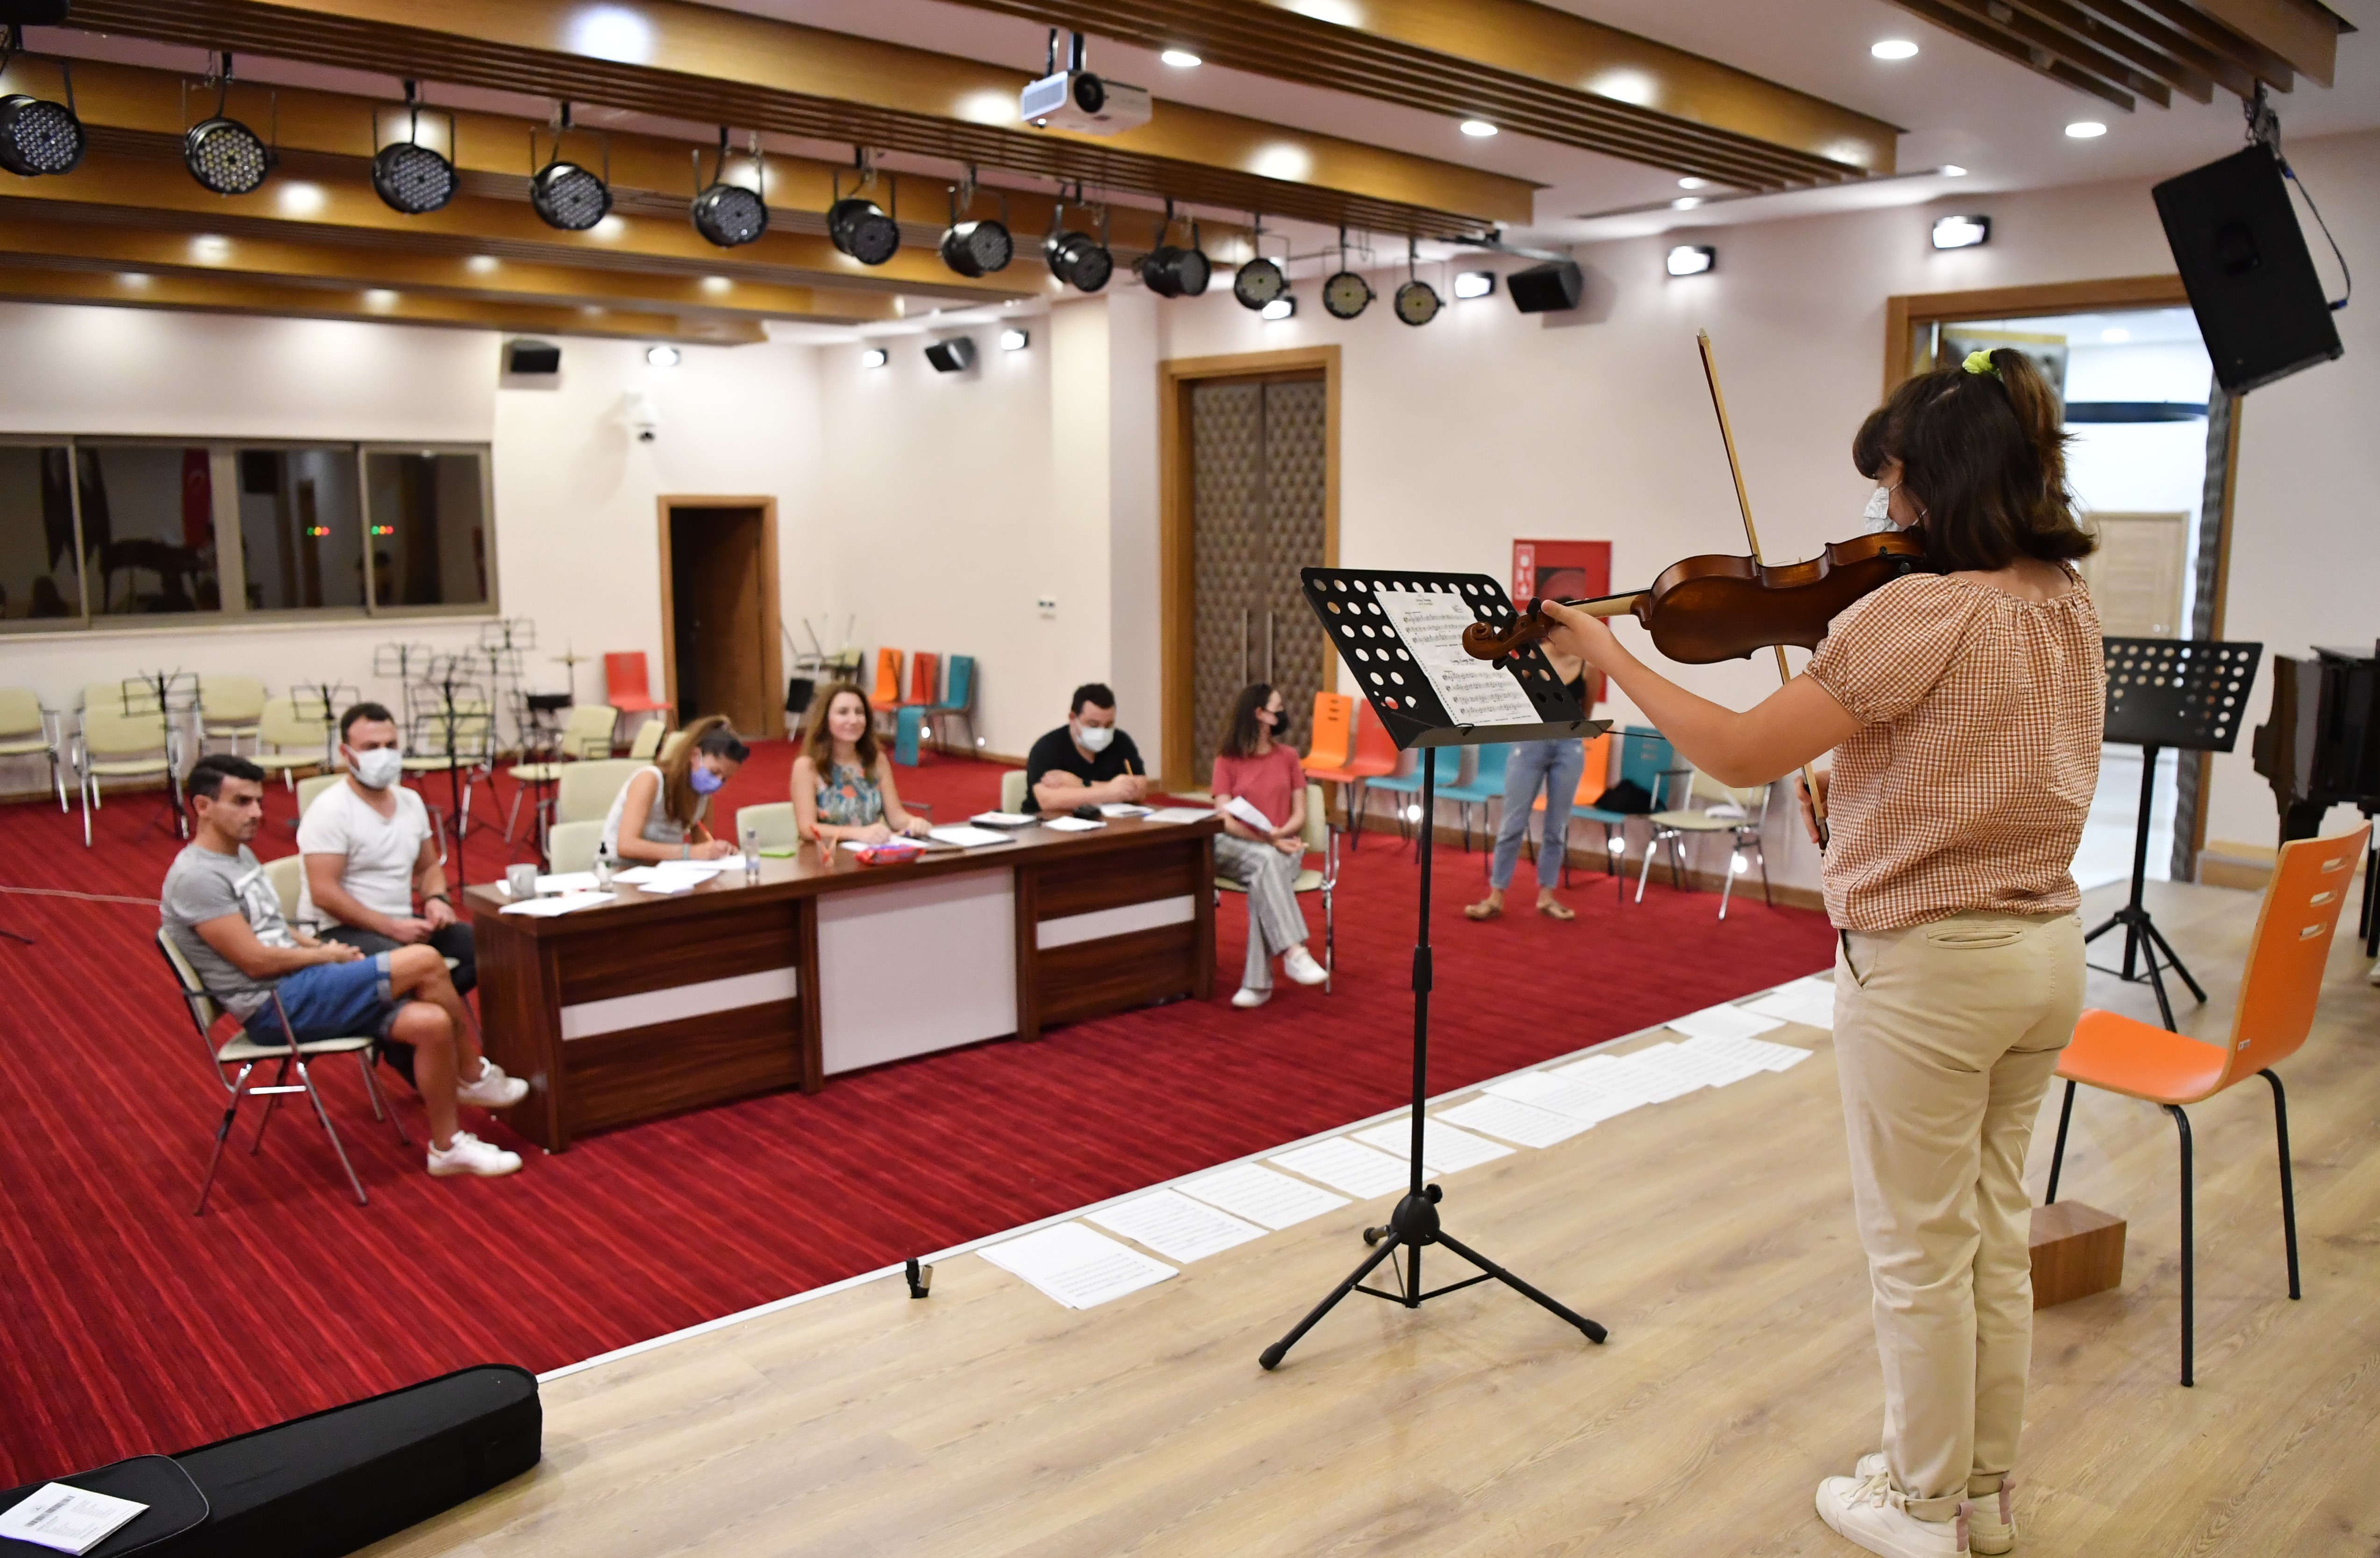 Konyaaltı Belediyesi Müzik Akademisi’ne yoğun ilgi